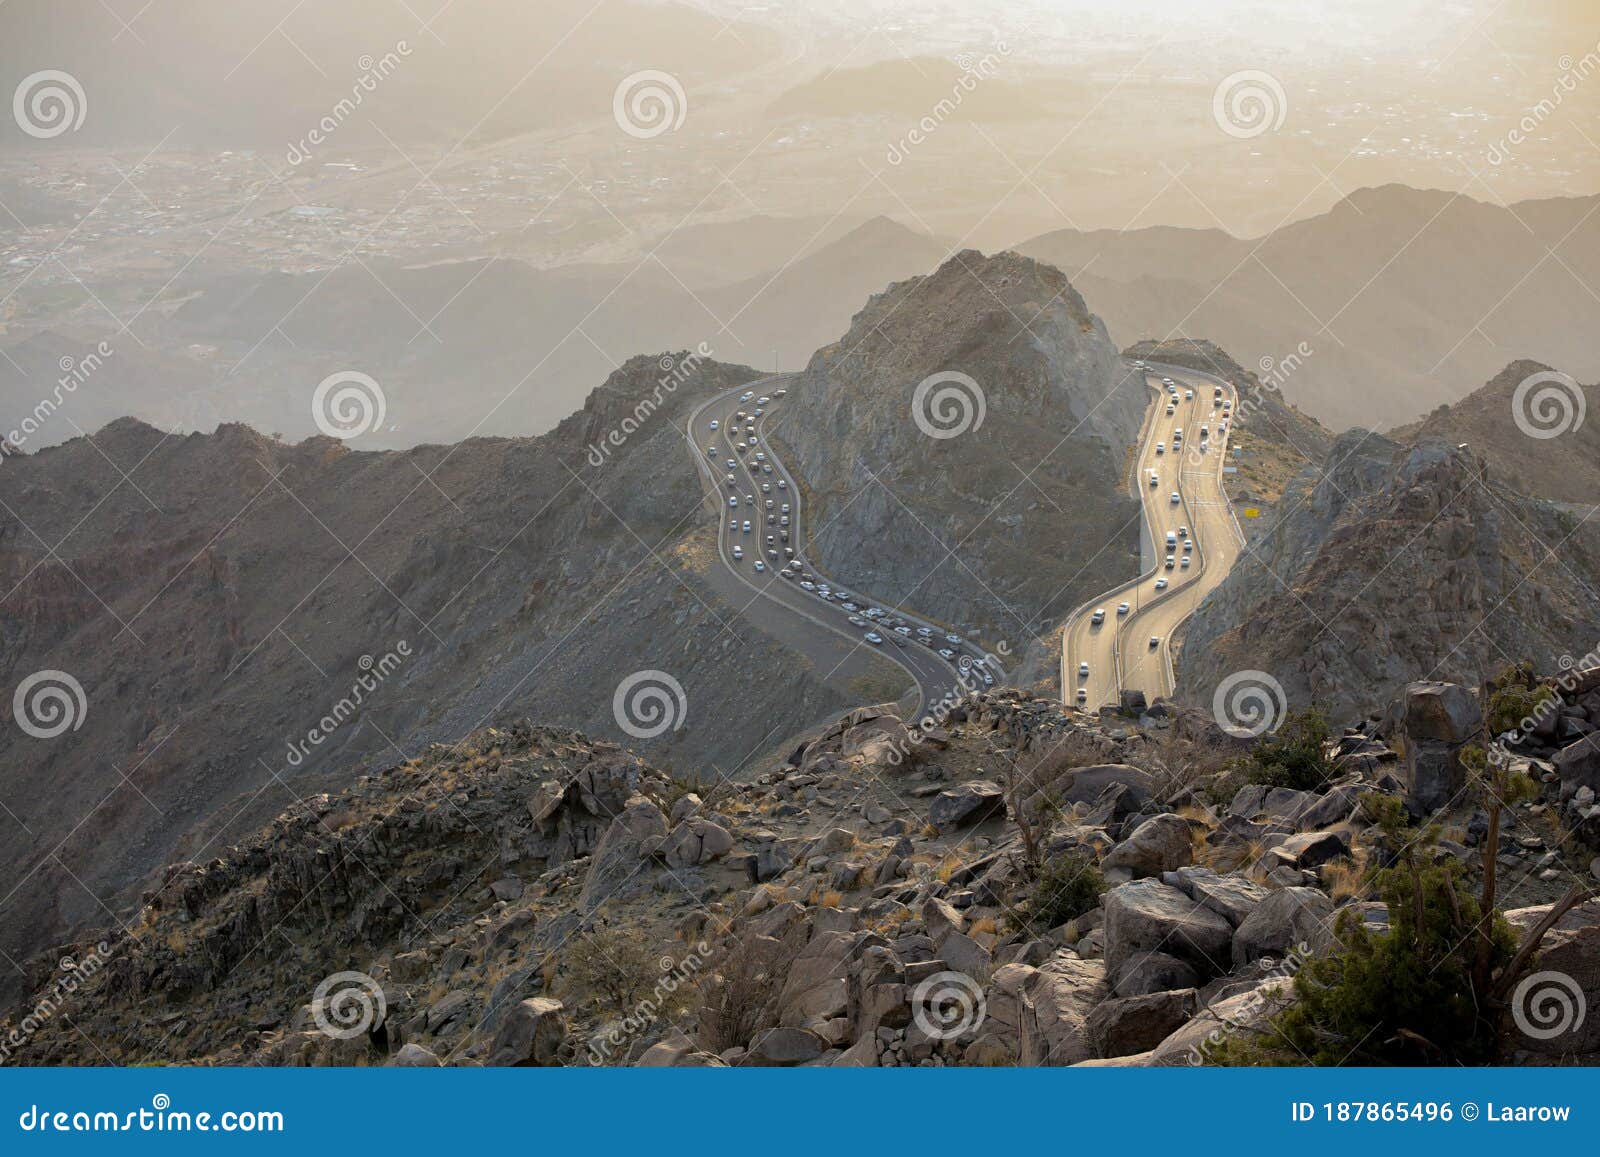 taif ksa , mountains in al taif, saudi arabia